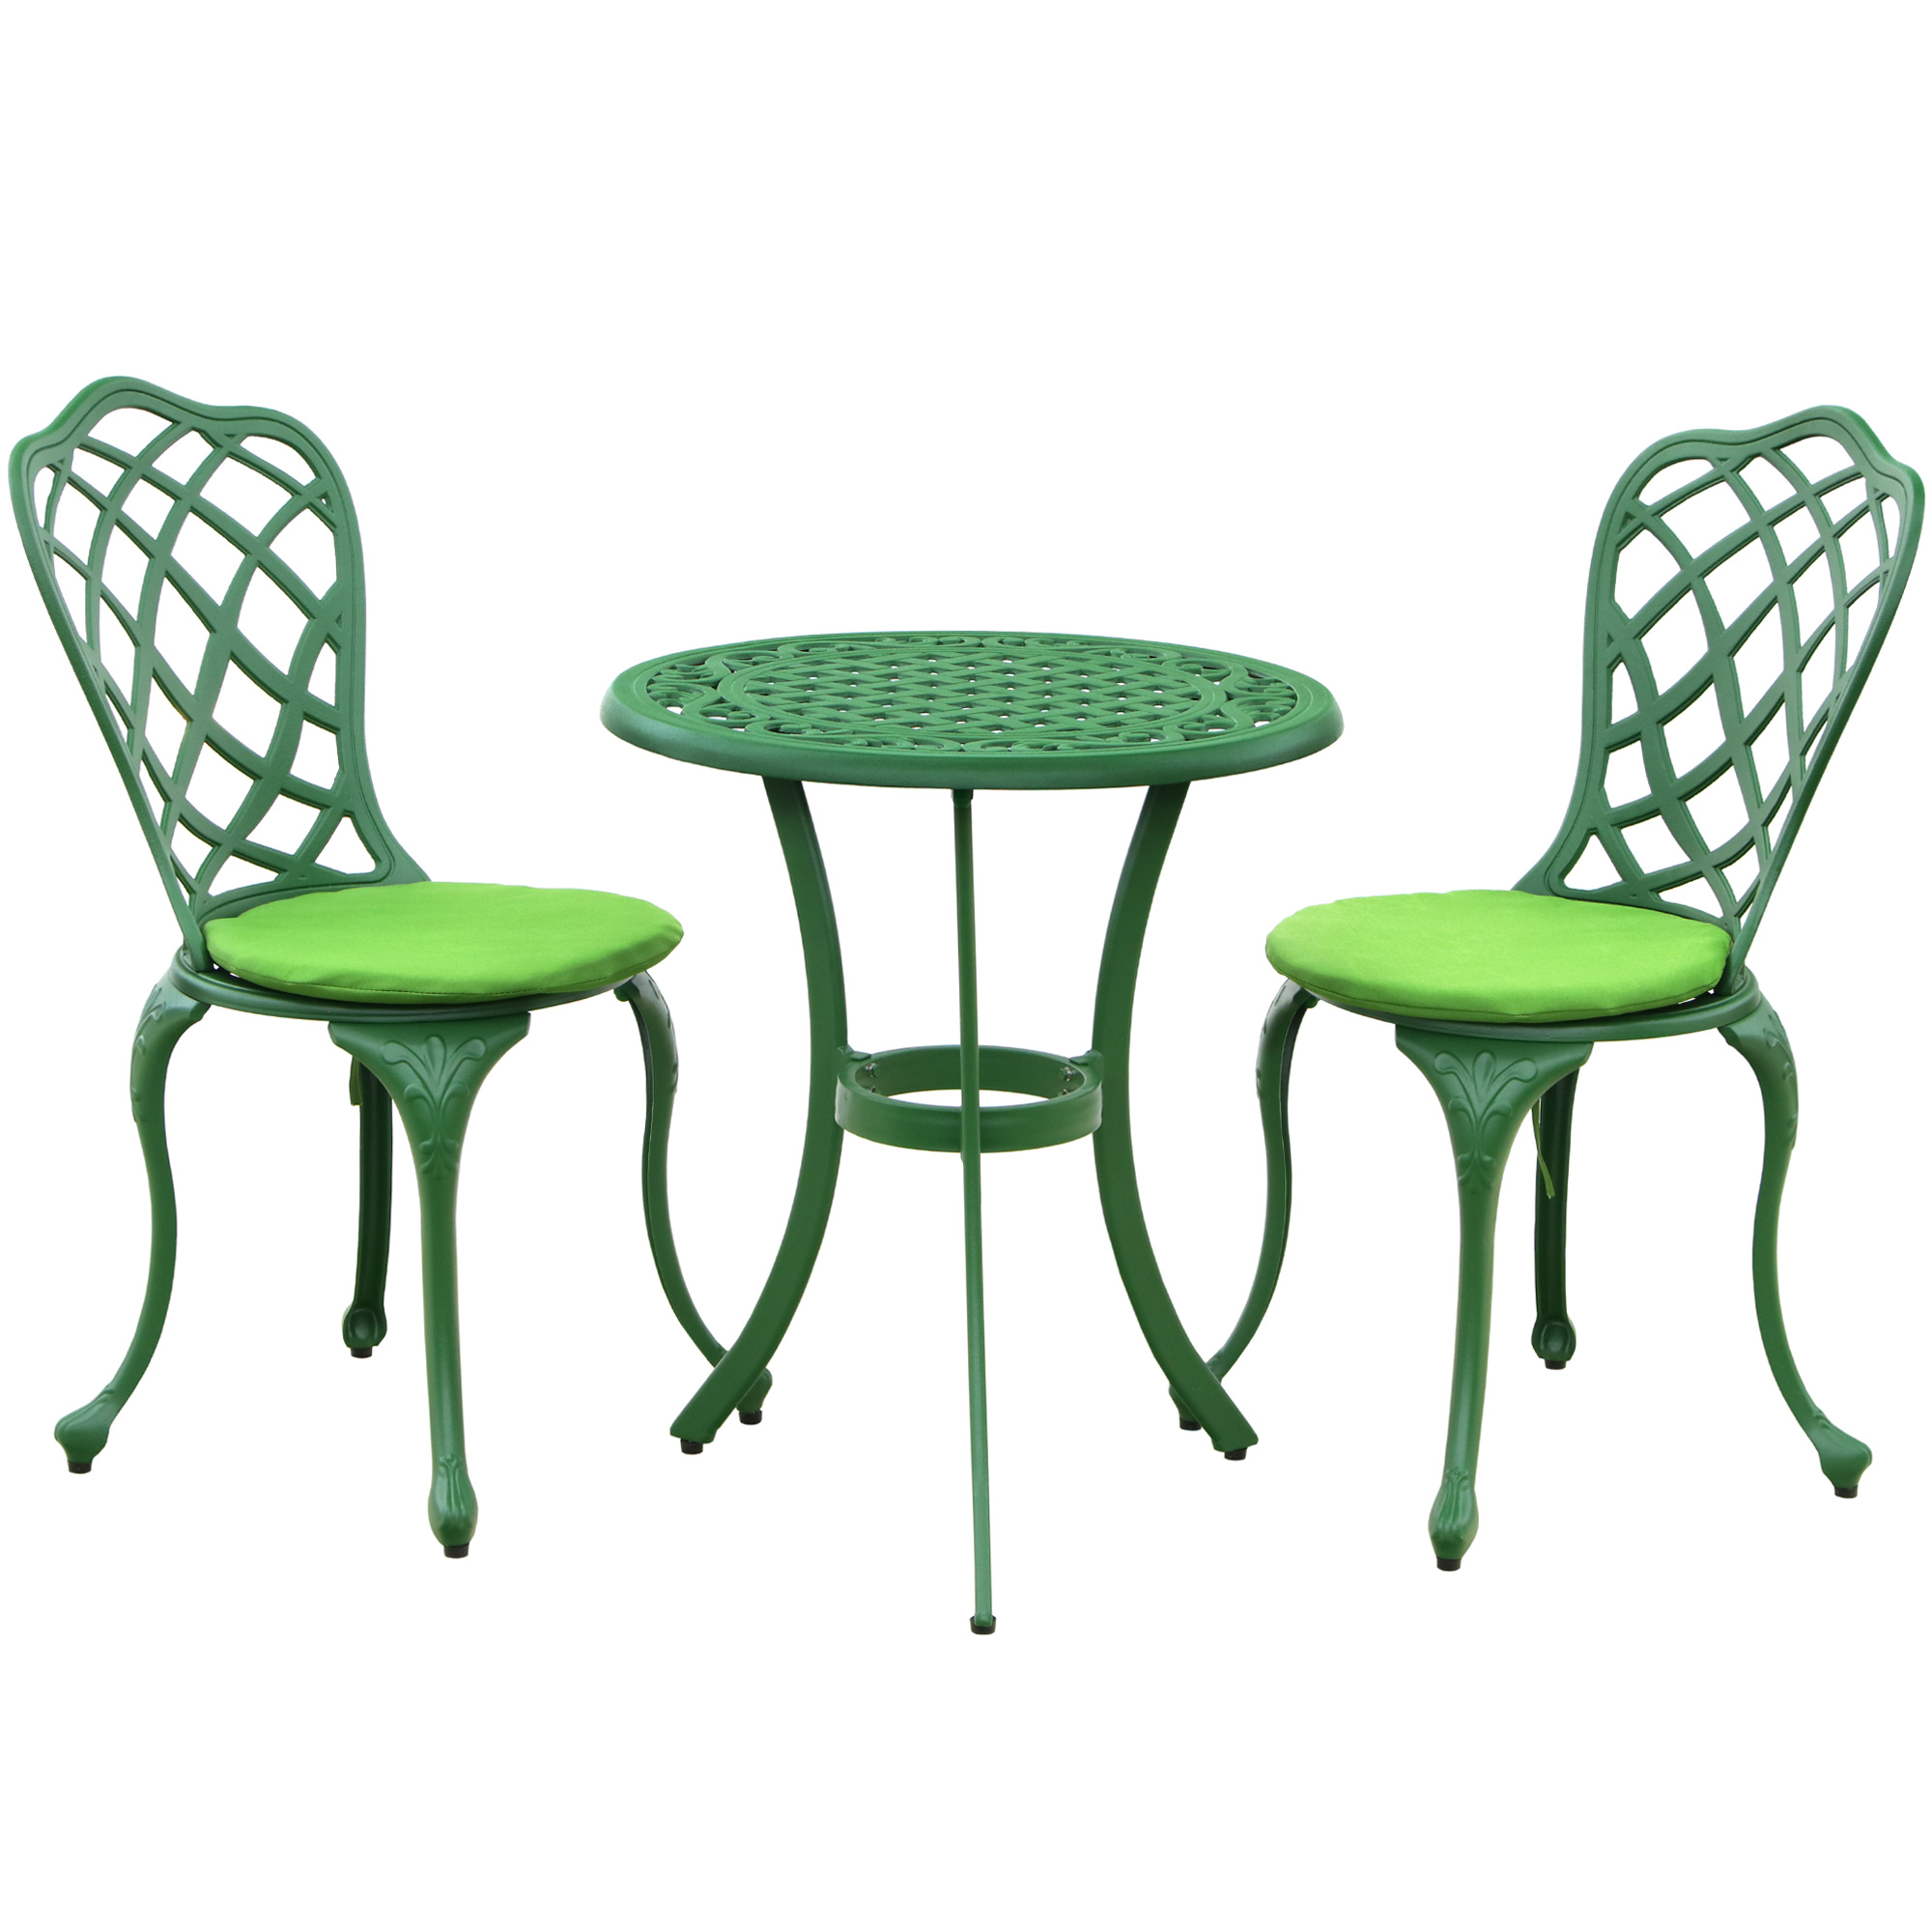 Комплект мебели Linyi 3 предмета зеленый/салатовый cтол drigani florida 70x70 см